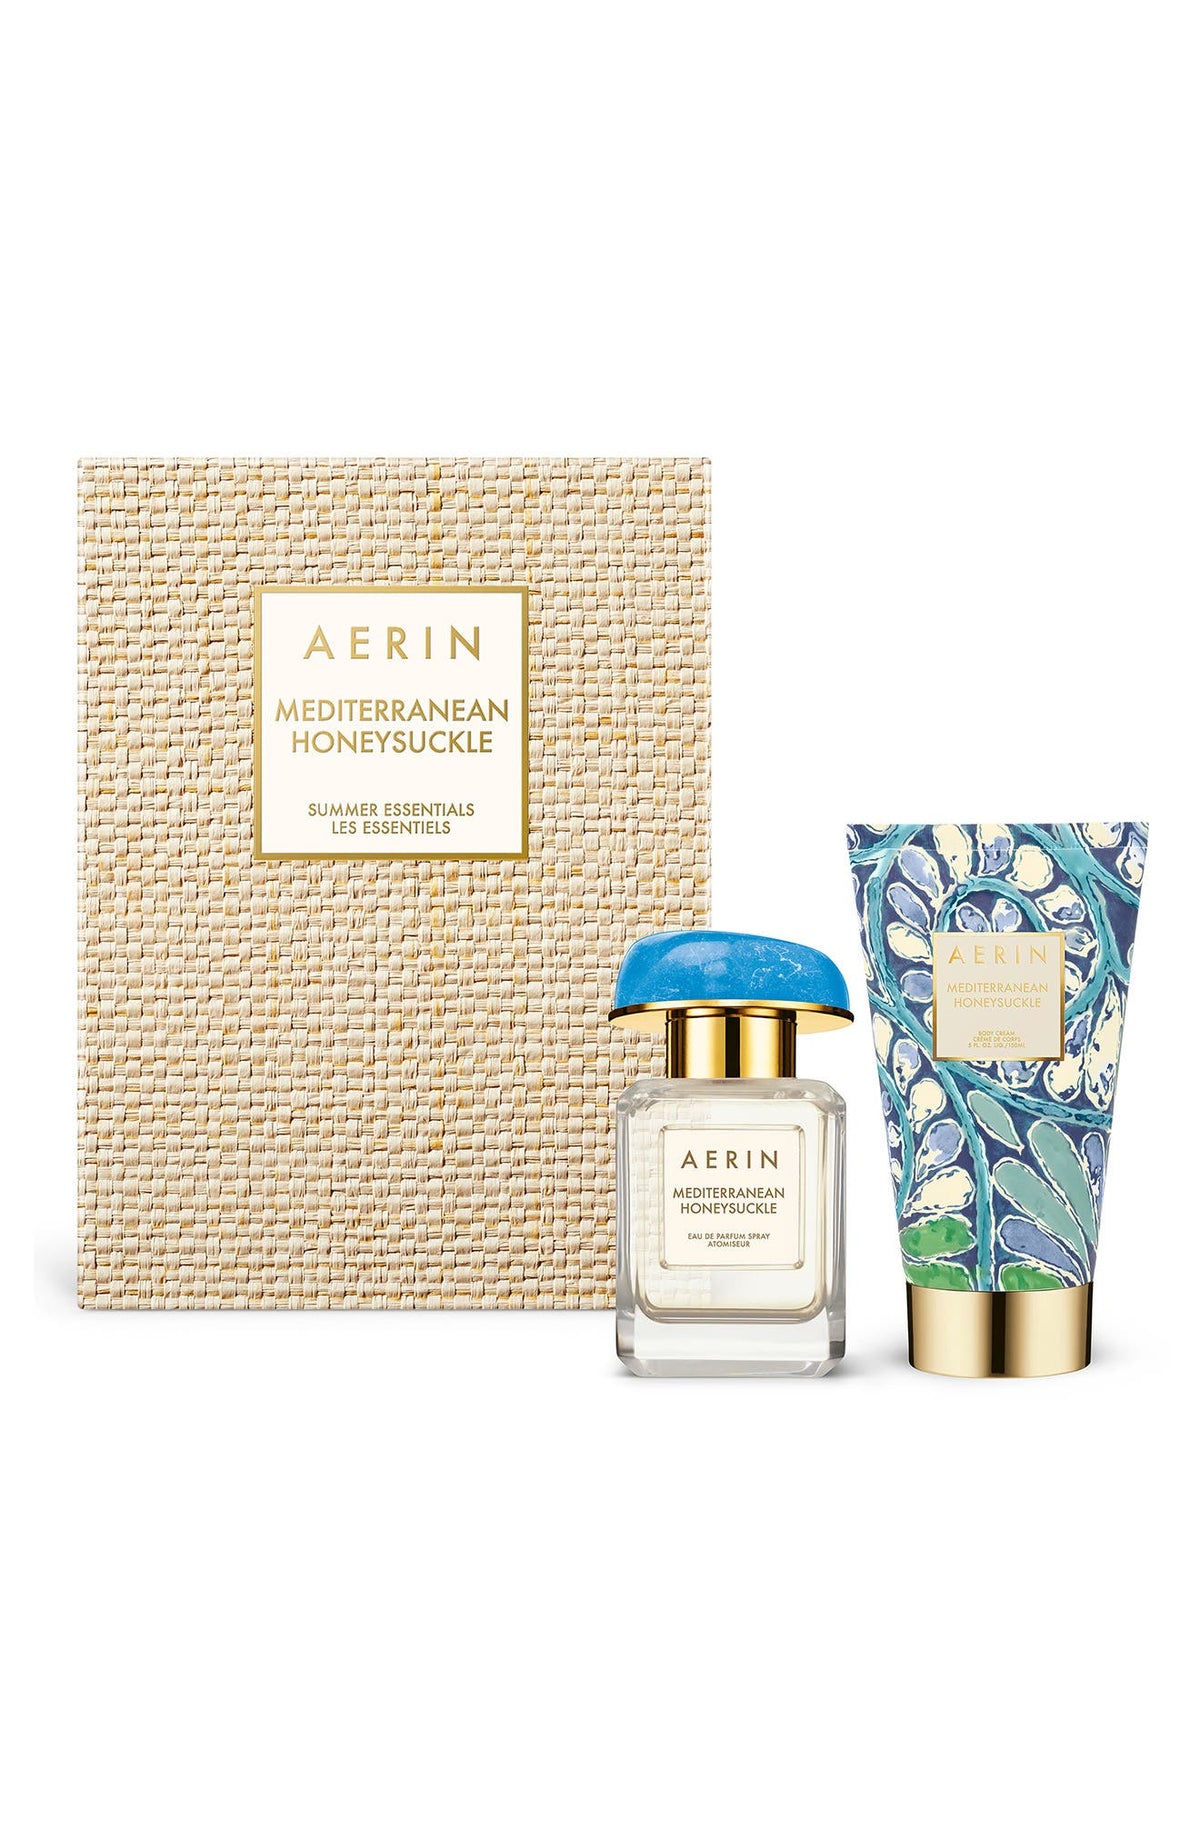 AERIN Mediterranean Honeysuckle Summer Essentials